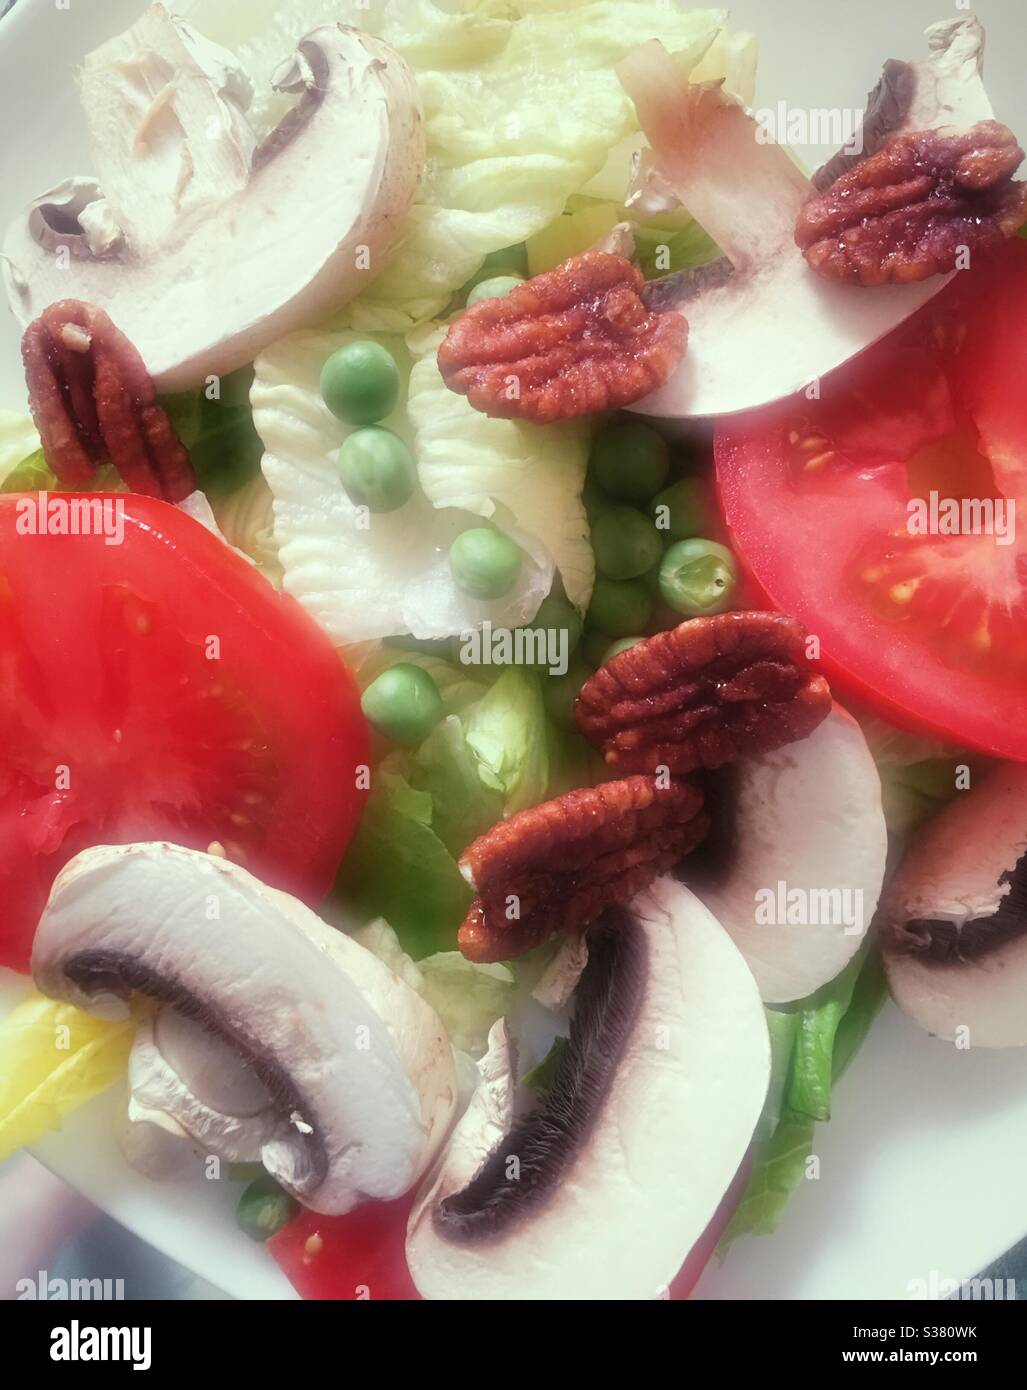 Flache Laie des Salats aus Salat, Tomaten, Pilzen und englischen Erbsen Stockfoto